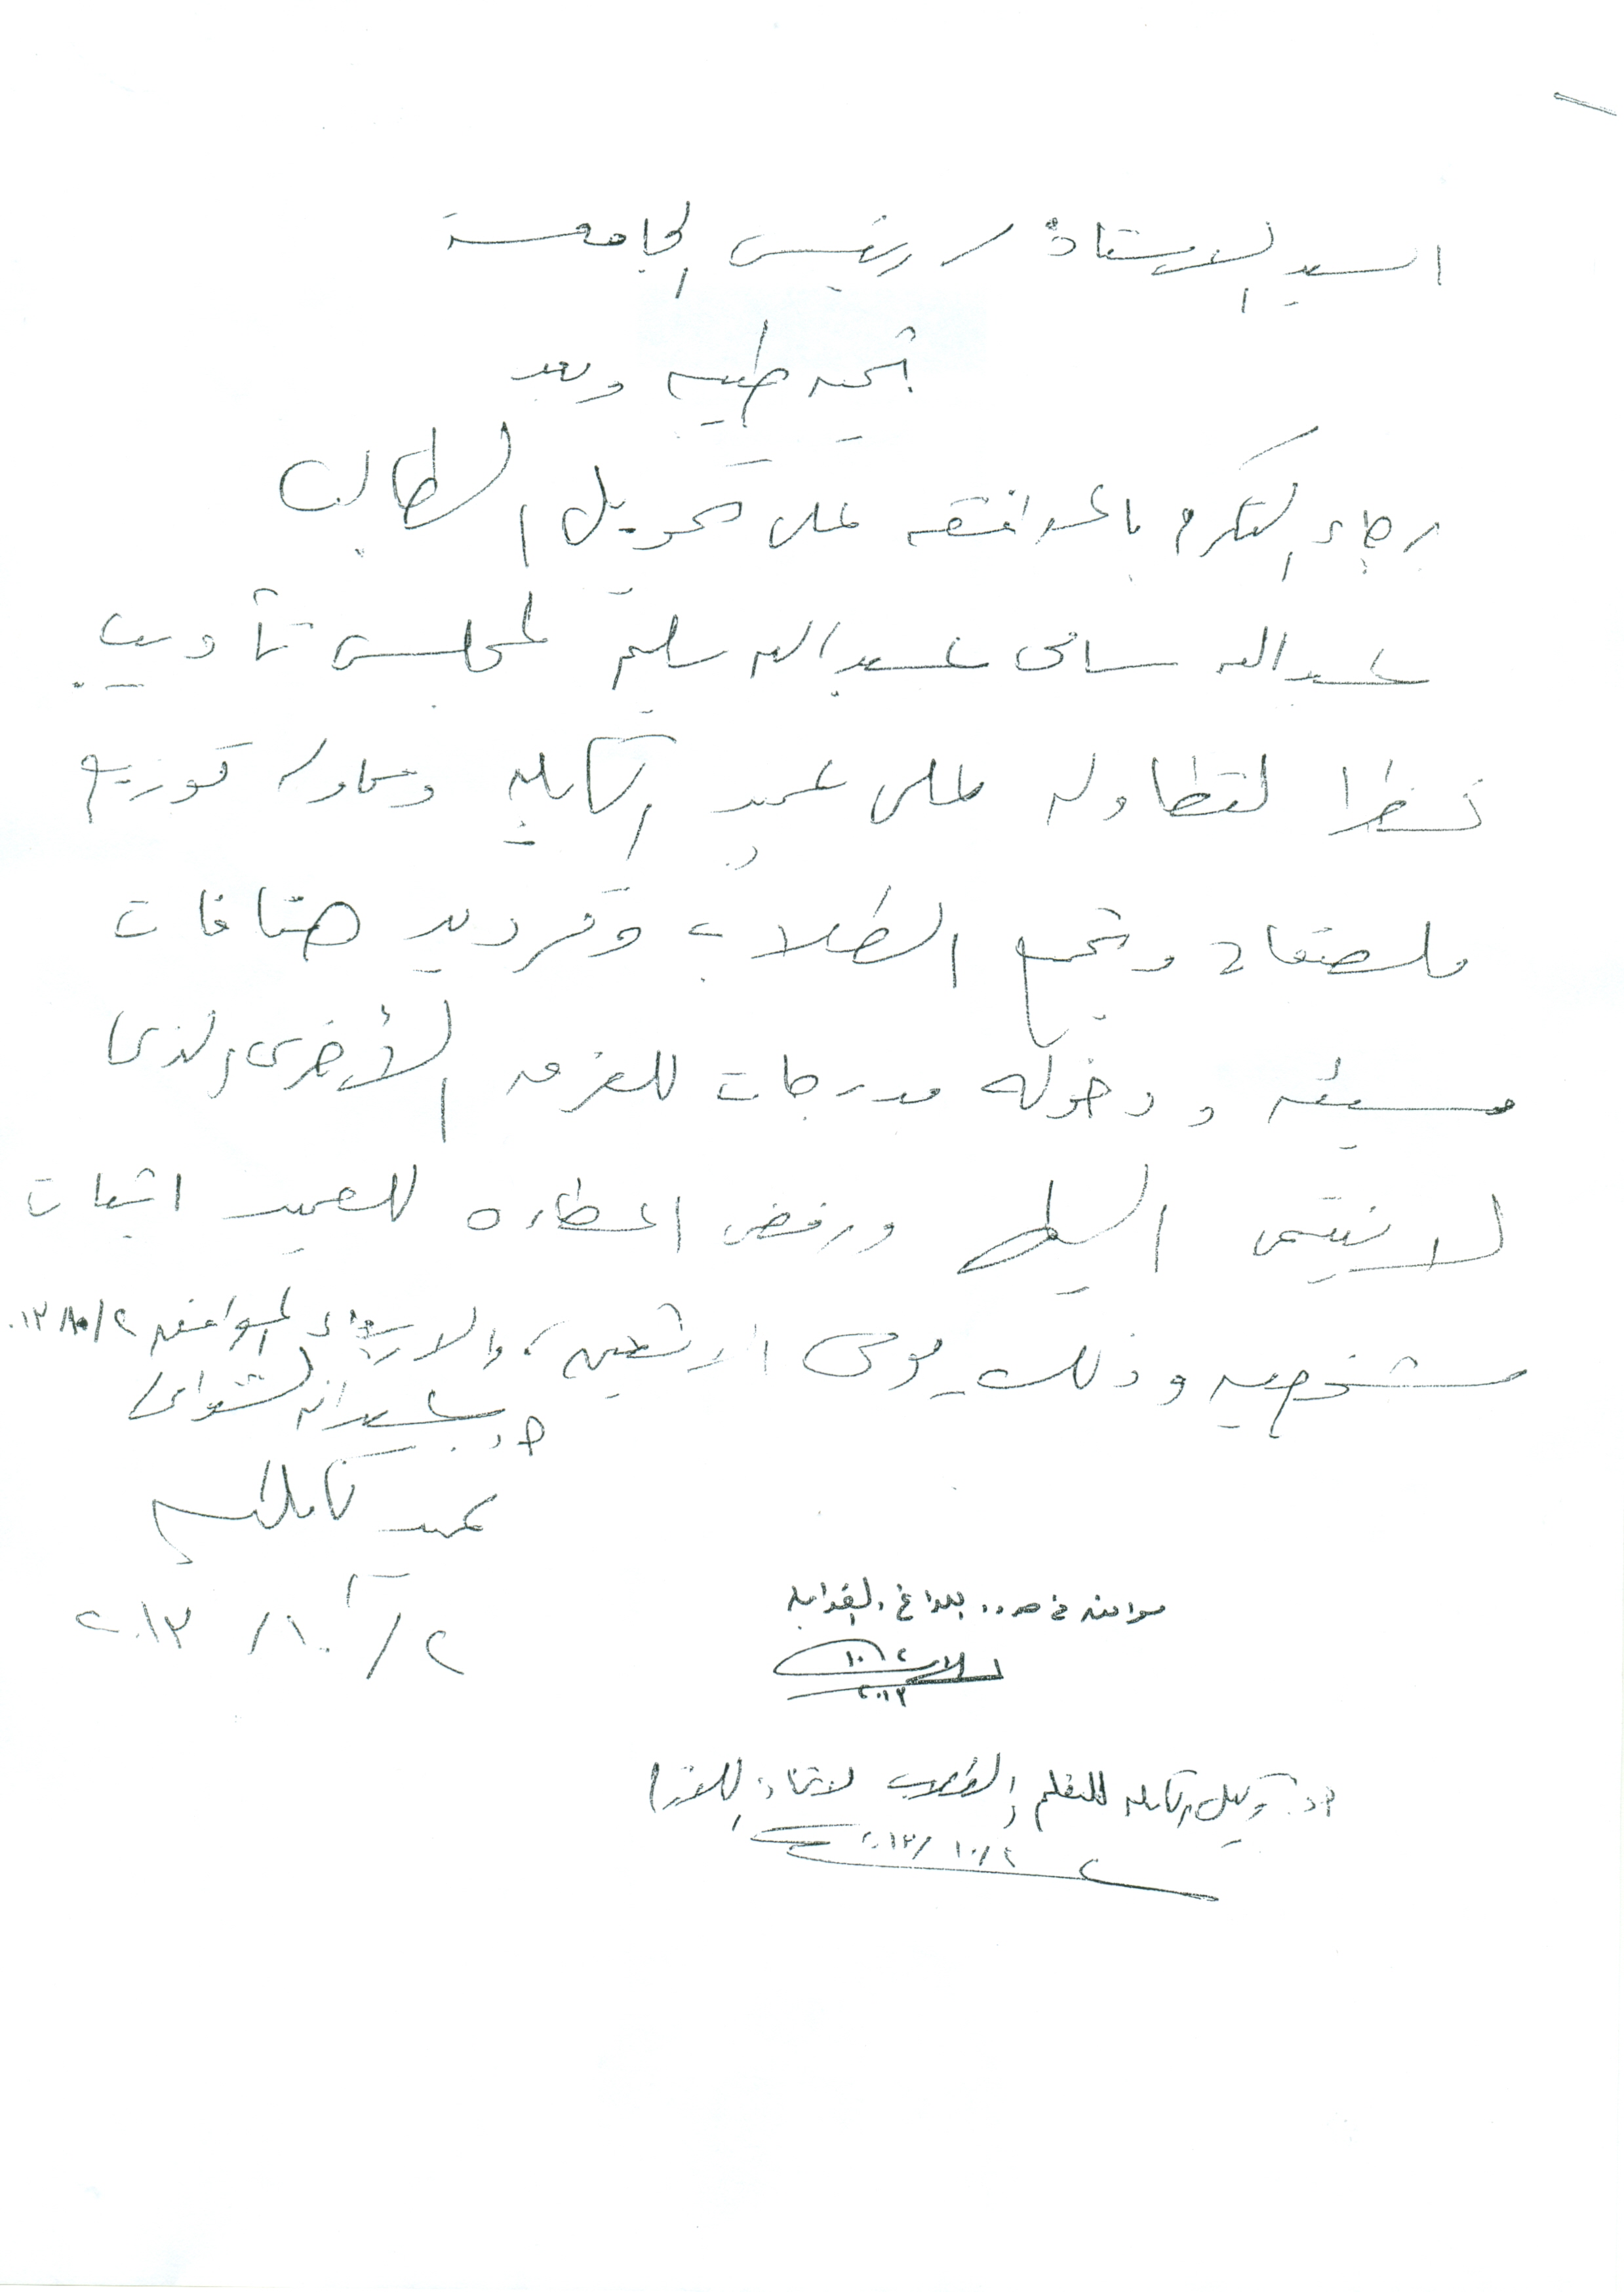 الموافقة على تحويل الطالب/ عبد الله سامى عبد الله سليم  لمجلس تأديب بالكلية